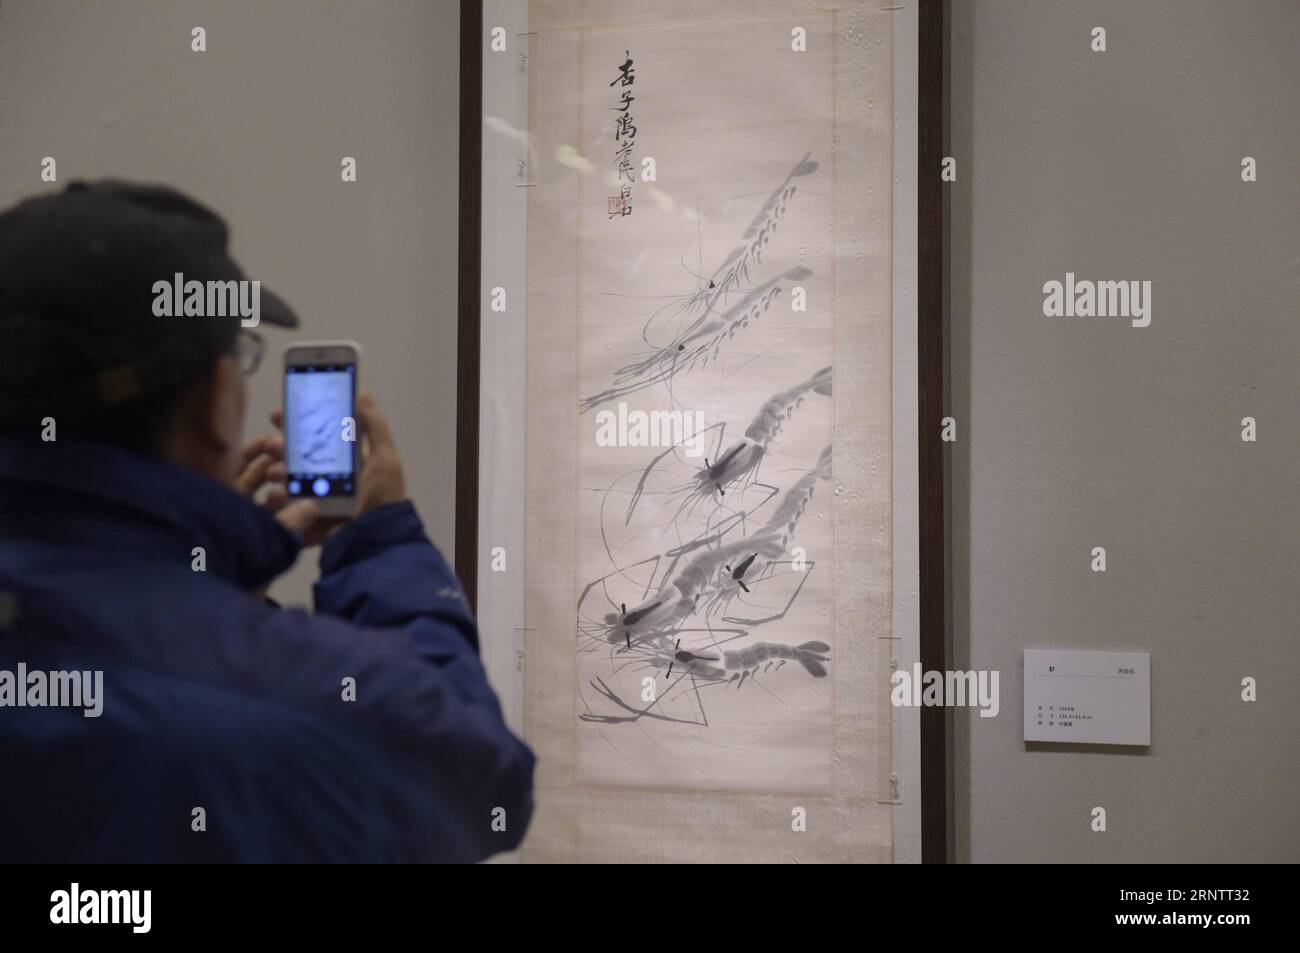 (171118) -- BEIJING, 18 novembre 2017 -- Un visiteur prend des photos d'une œuvre de Qi Baishi lors d'une exposition sous le thème de la beauté dans la nouvelle ère au Musée national d'art de Chine (NAMOC) à Beijing, capitale de la Chine, le 17 novembre 2017. Plus de 200 œuvres de maîtres célèbres des temps modernes recueillies par le NAMOC ont été exposées lors de l'exposition de 10 jours inaugurée le 17 novembre. (wsw) CHINA-BEIJING-ART EXHIBITION (CN) LuxPeng PUBLICATIONxNOTxINxCHN Banque D'Images